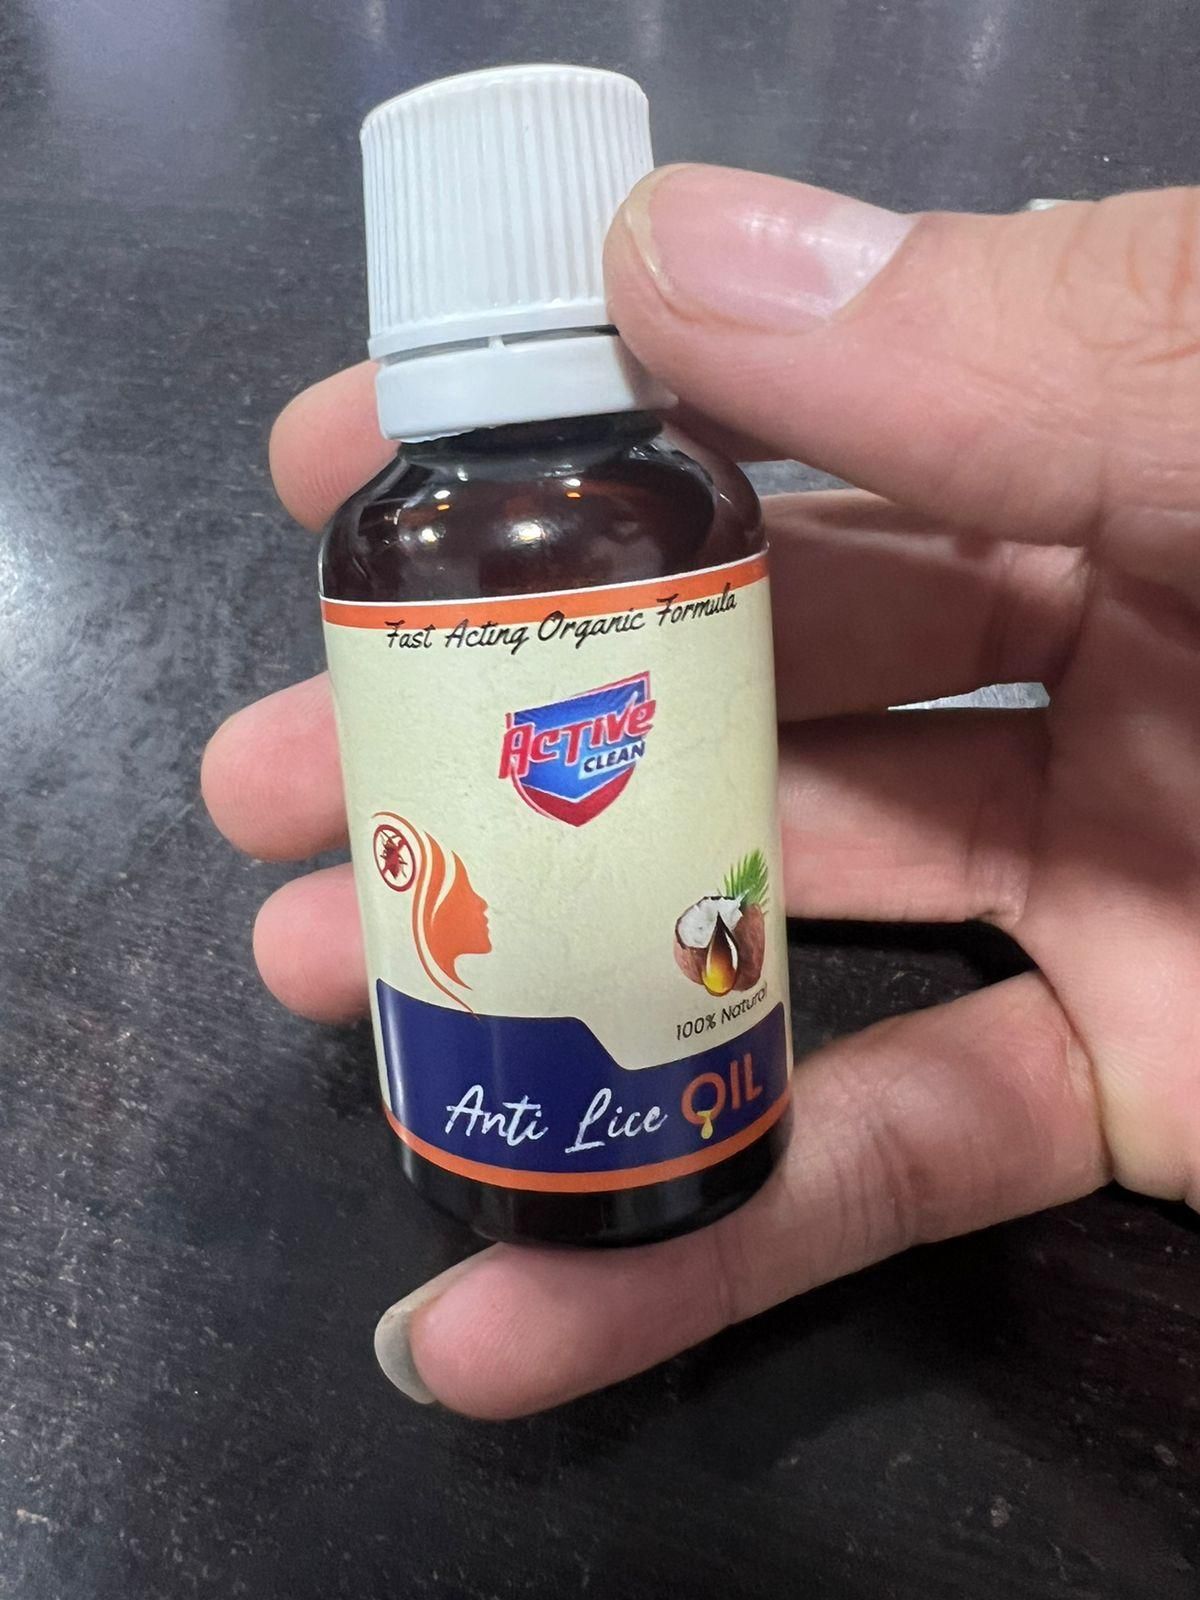 Lice removal Anti Lice Oil